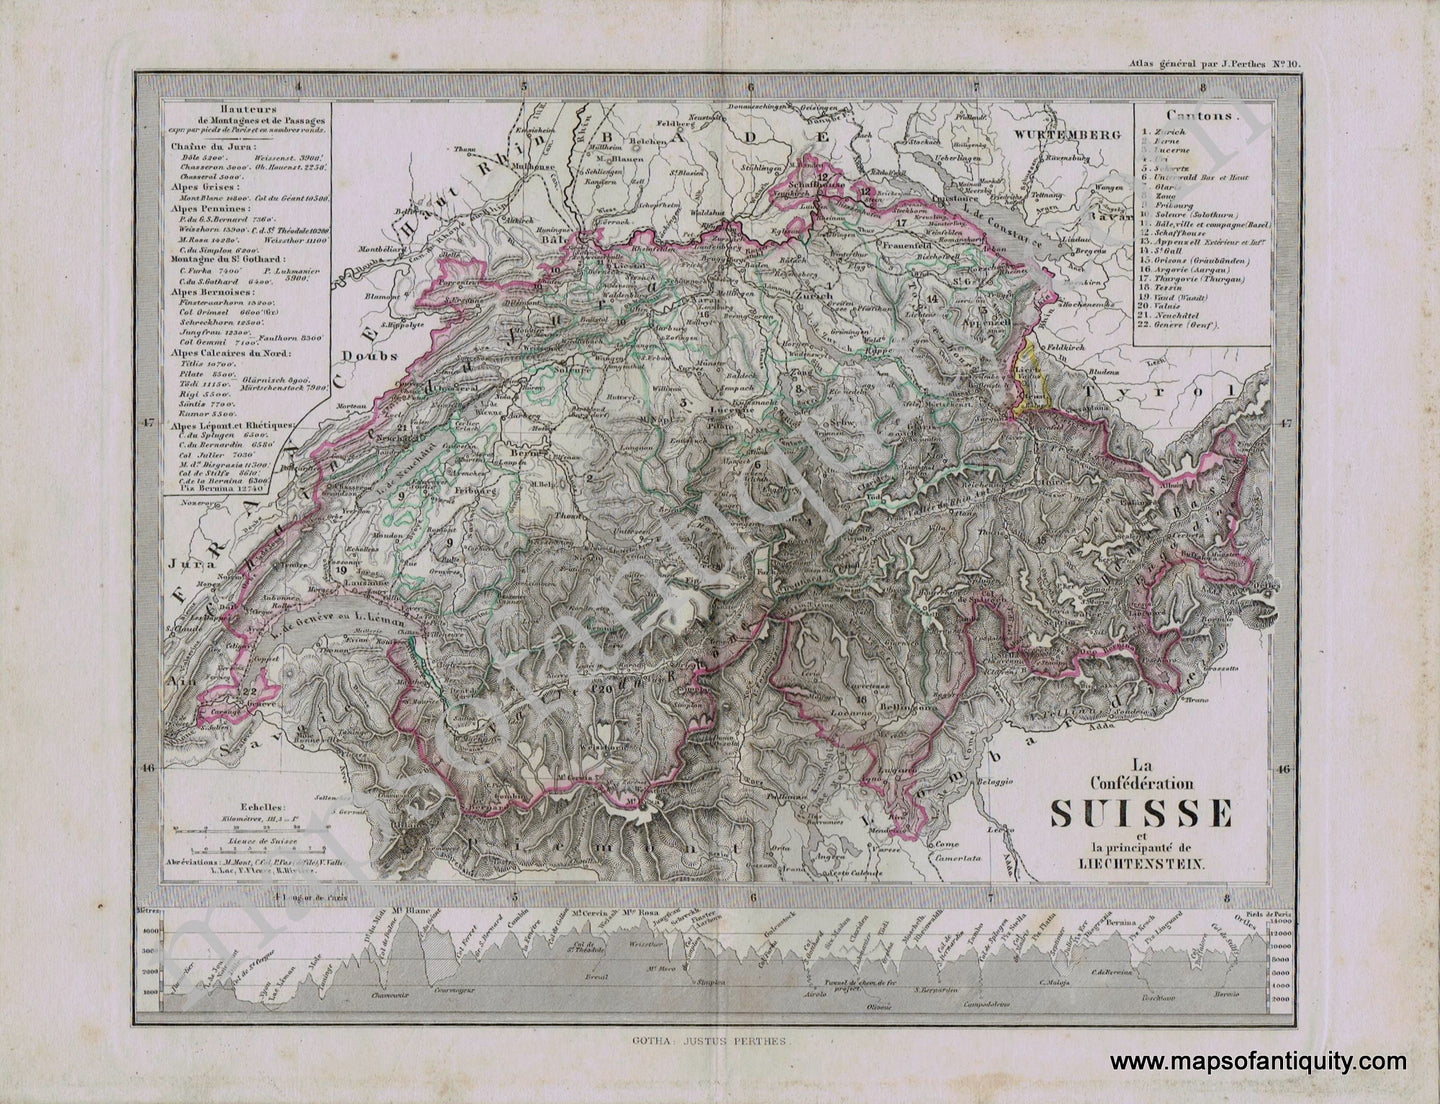 Switzerland-Les-Confederation-Suisse-et-la-Principaute-de-Liechtenstein-Perthes-1871-Antique-Map-1870s-1800s-19th-century-Maps-of-Antiquity